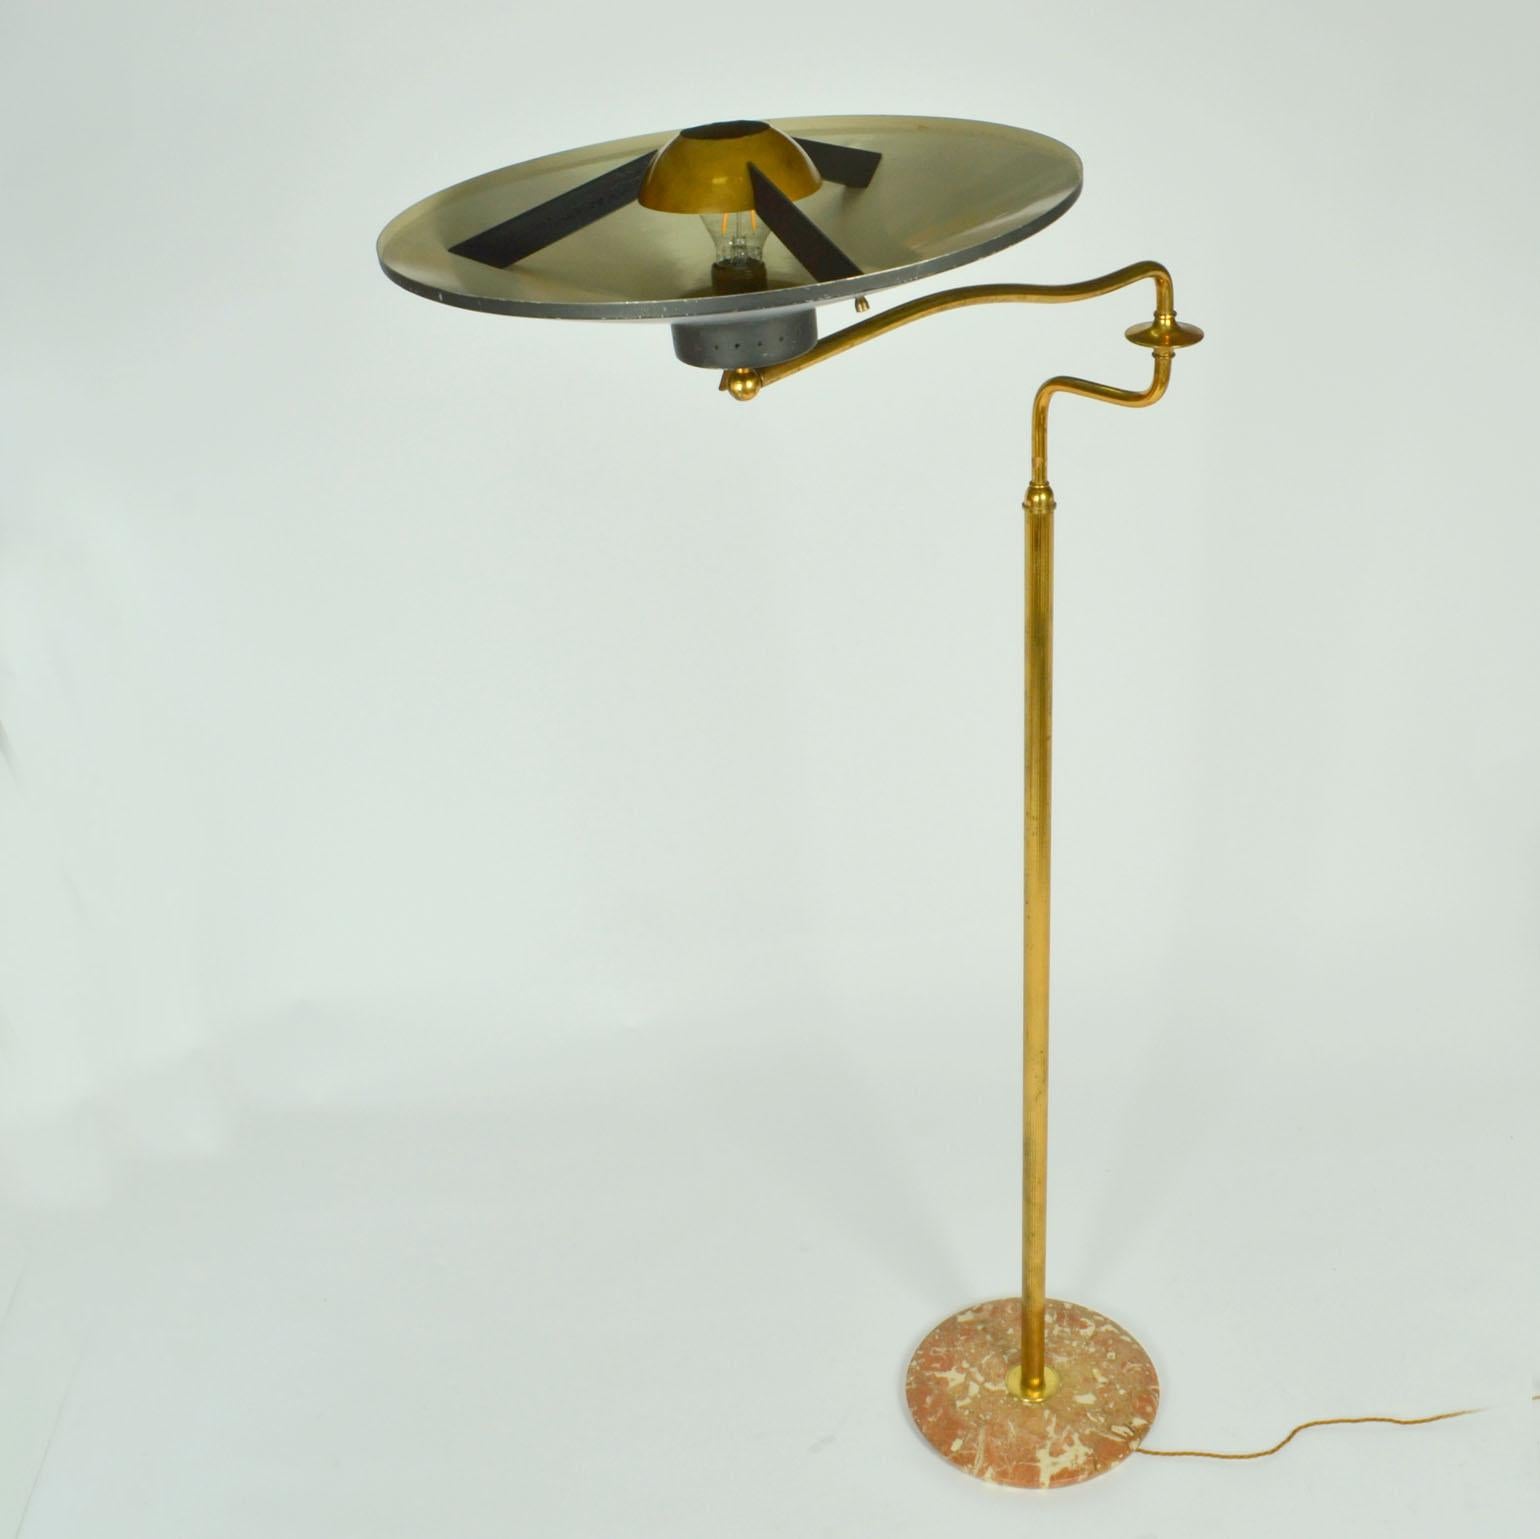 Italian Swing Arm Brass Floor Lamp, Original Black Shade, 1950's Stilnovo Style For Sale 1